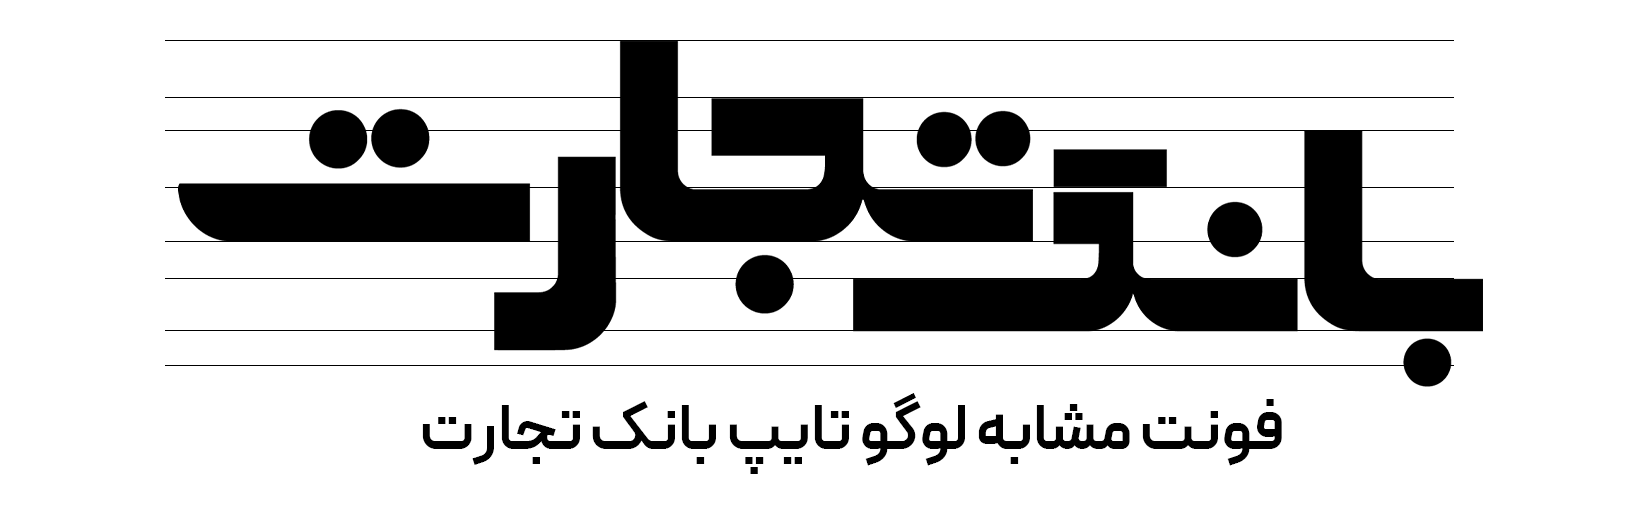 دانلود فونت فارسی تجارت Tejarat